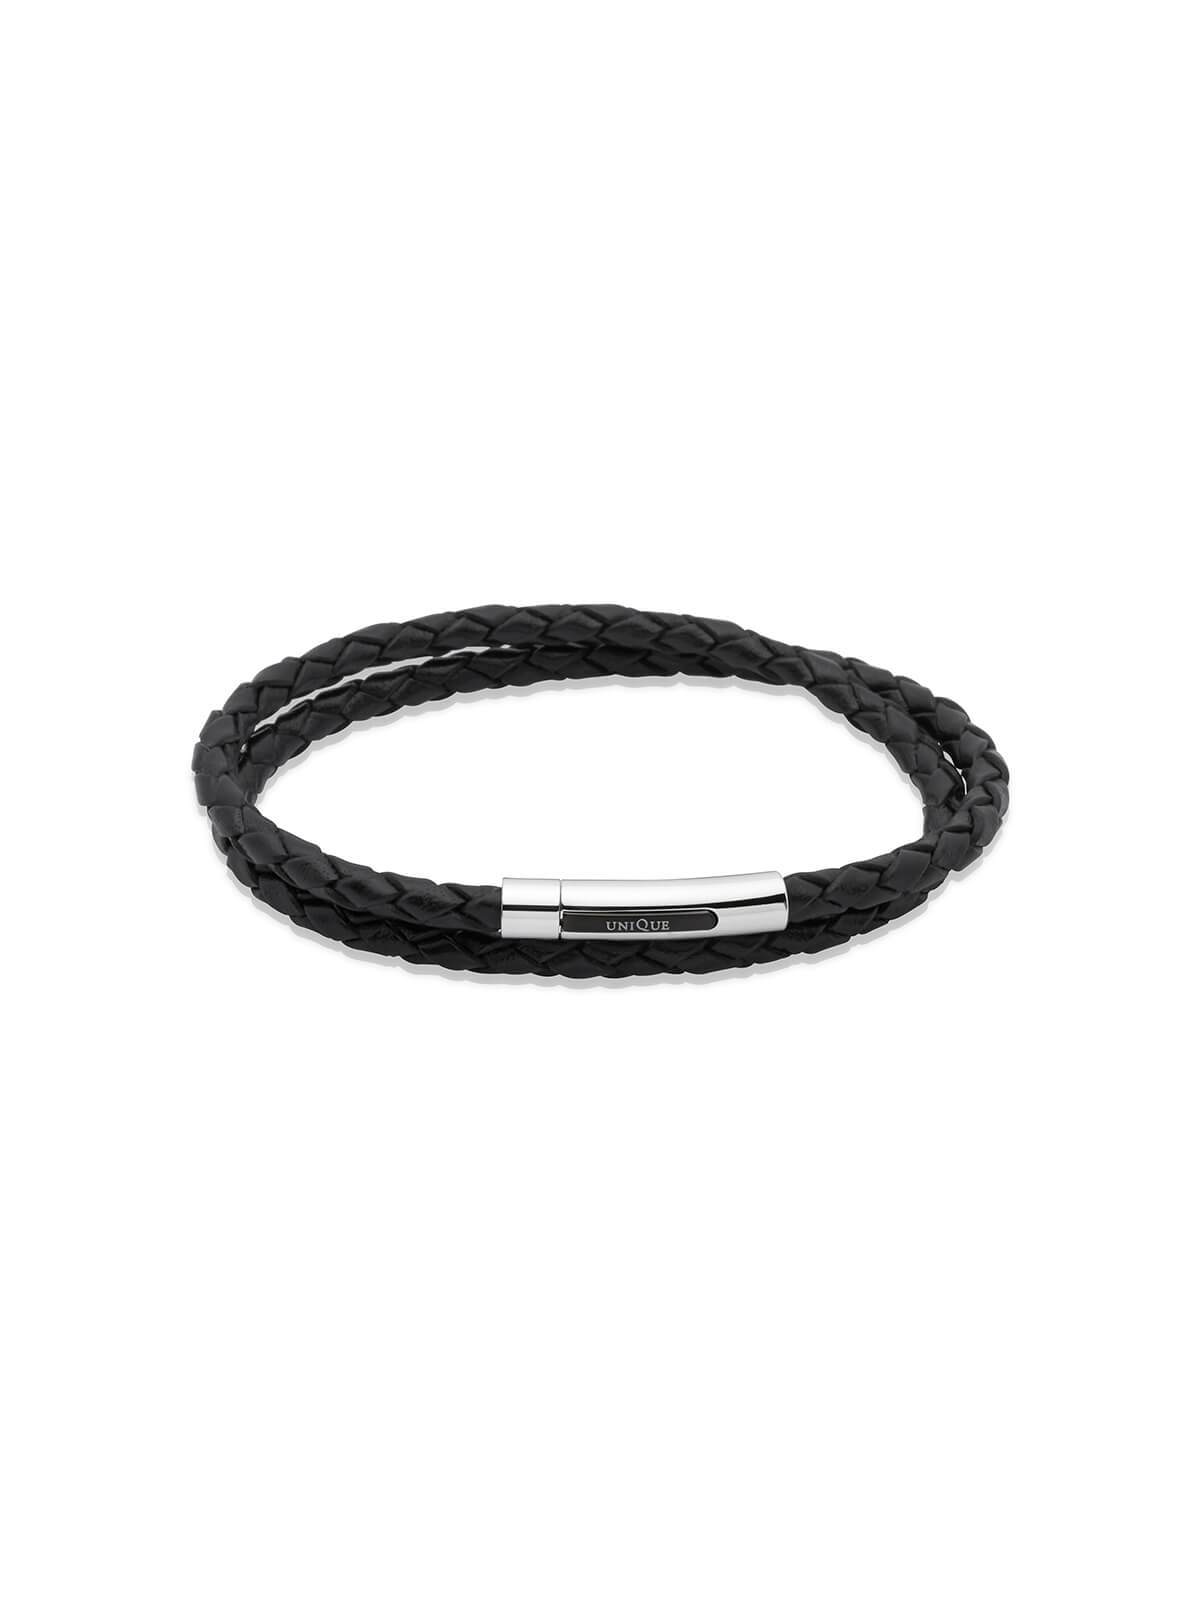 Unique & Co. 21cm Black Leather Double Wrap Bracelet B171BL/21CM